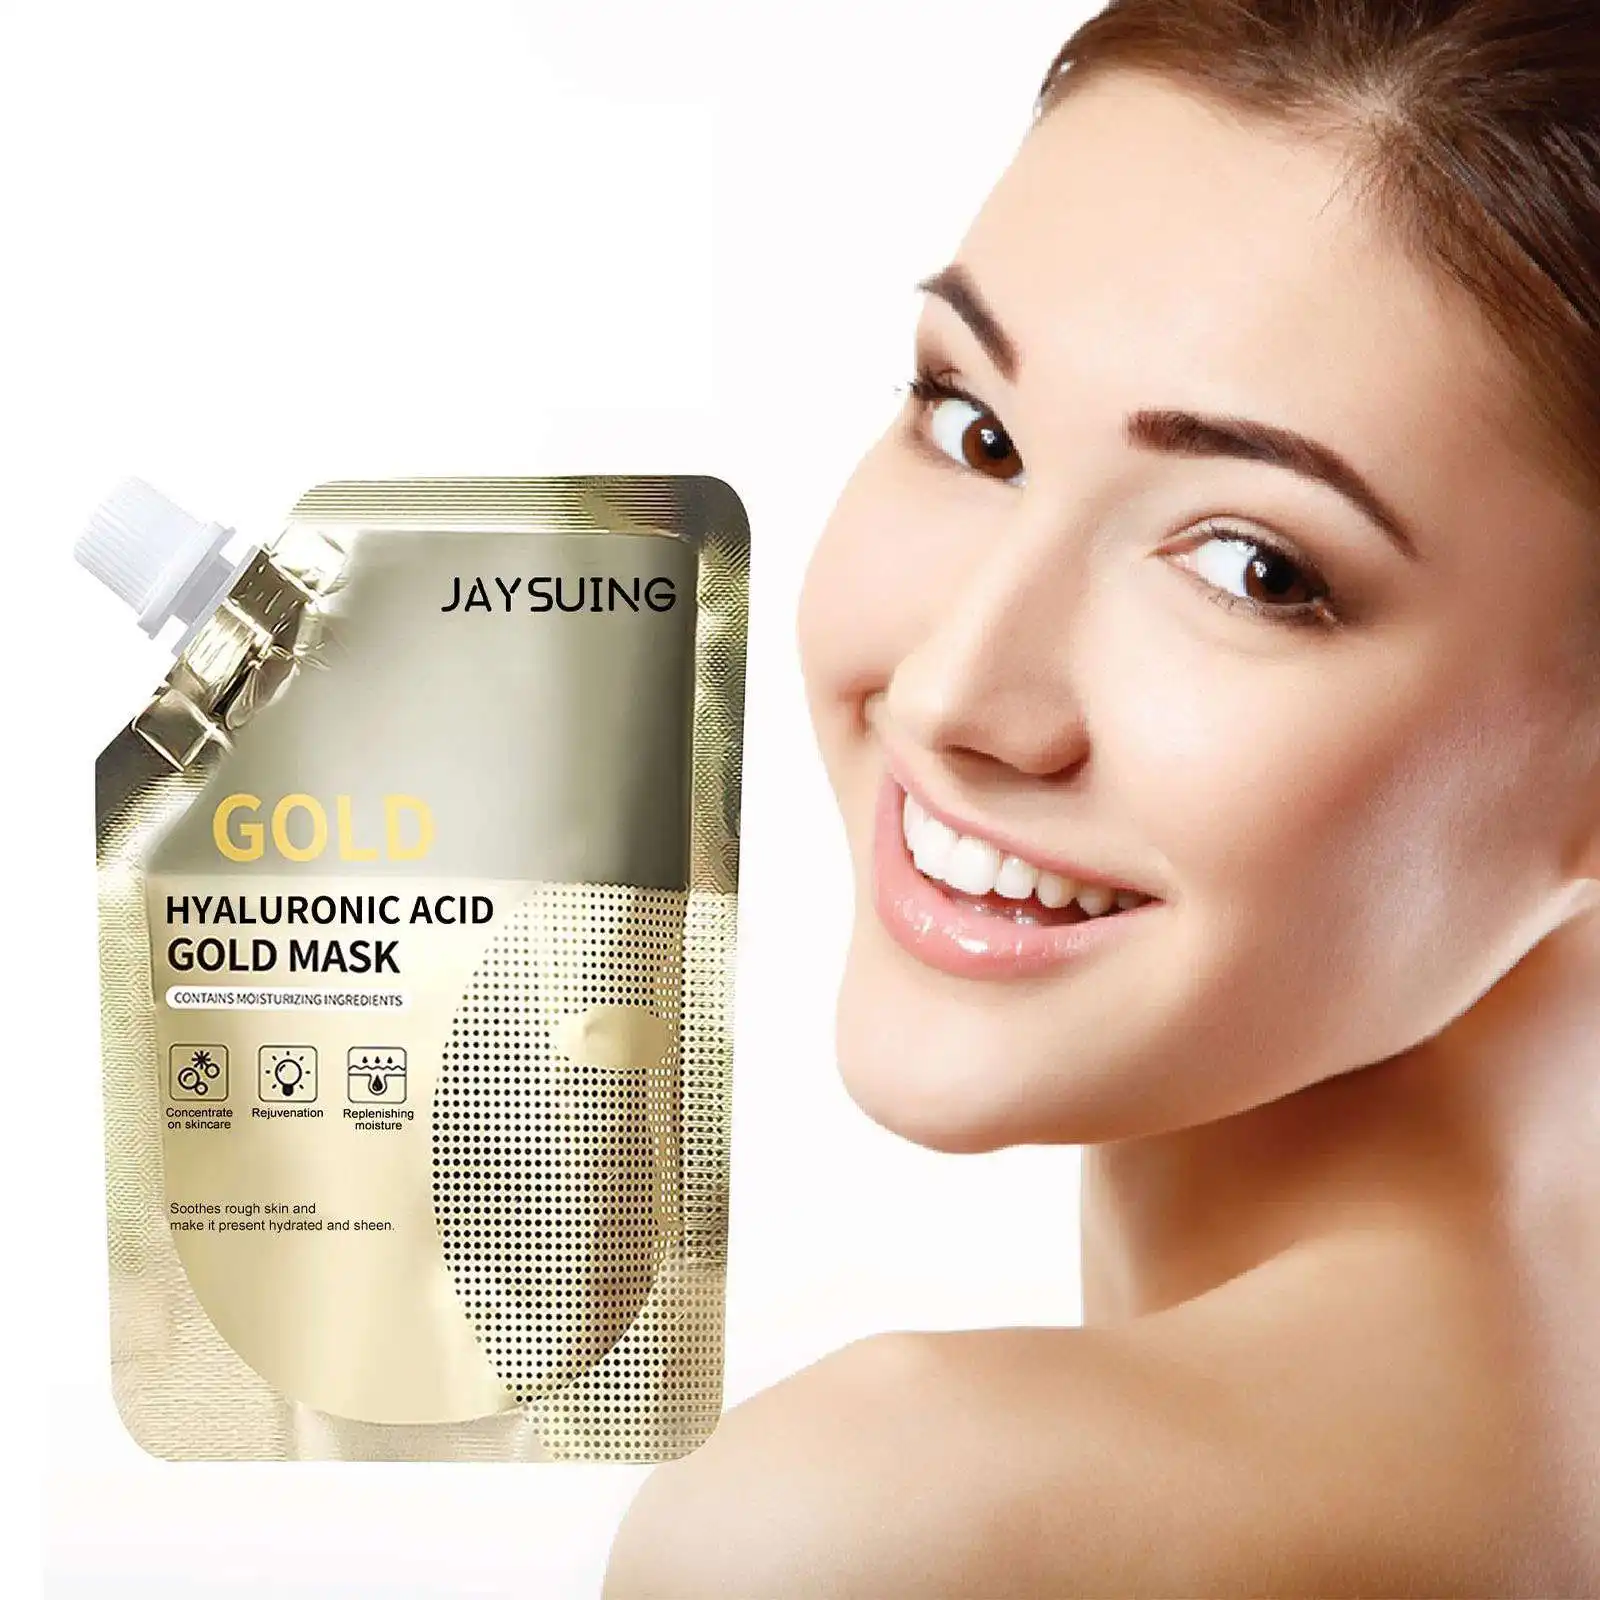 Le masque facial Rétinol Gold de Jaysuing nettoie en profondeur les pores, atténue les ridules et resserre la peau